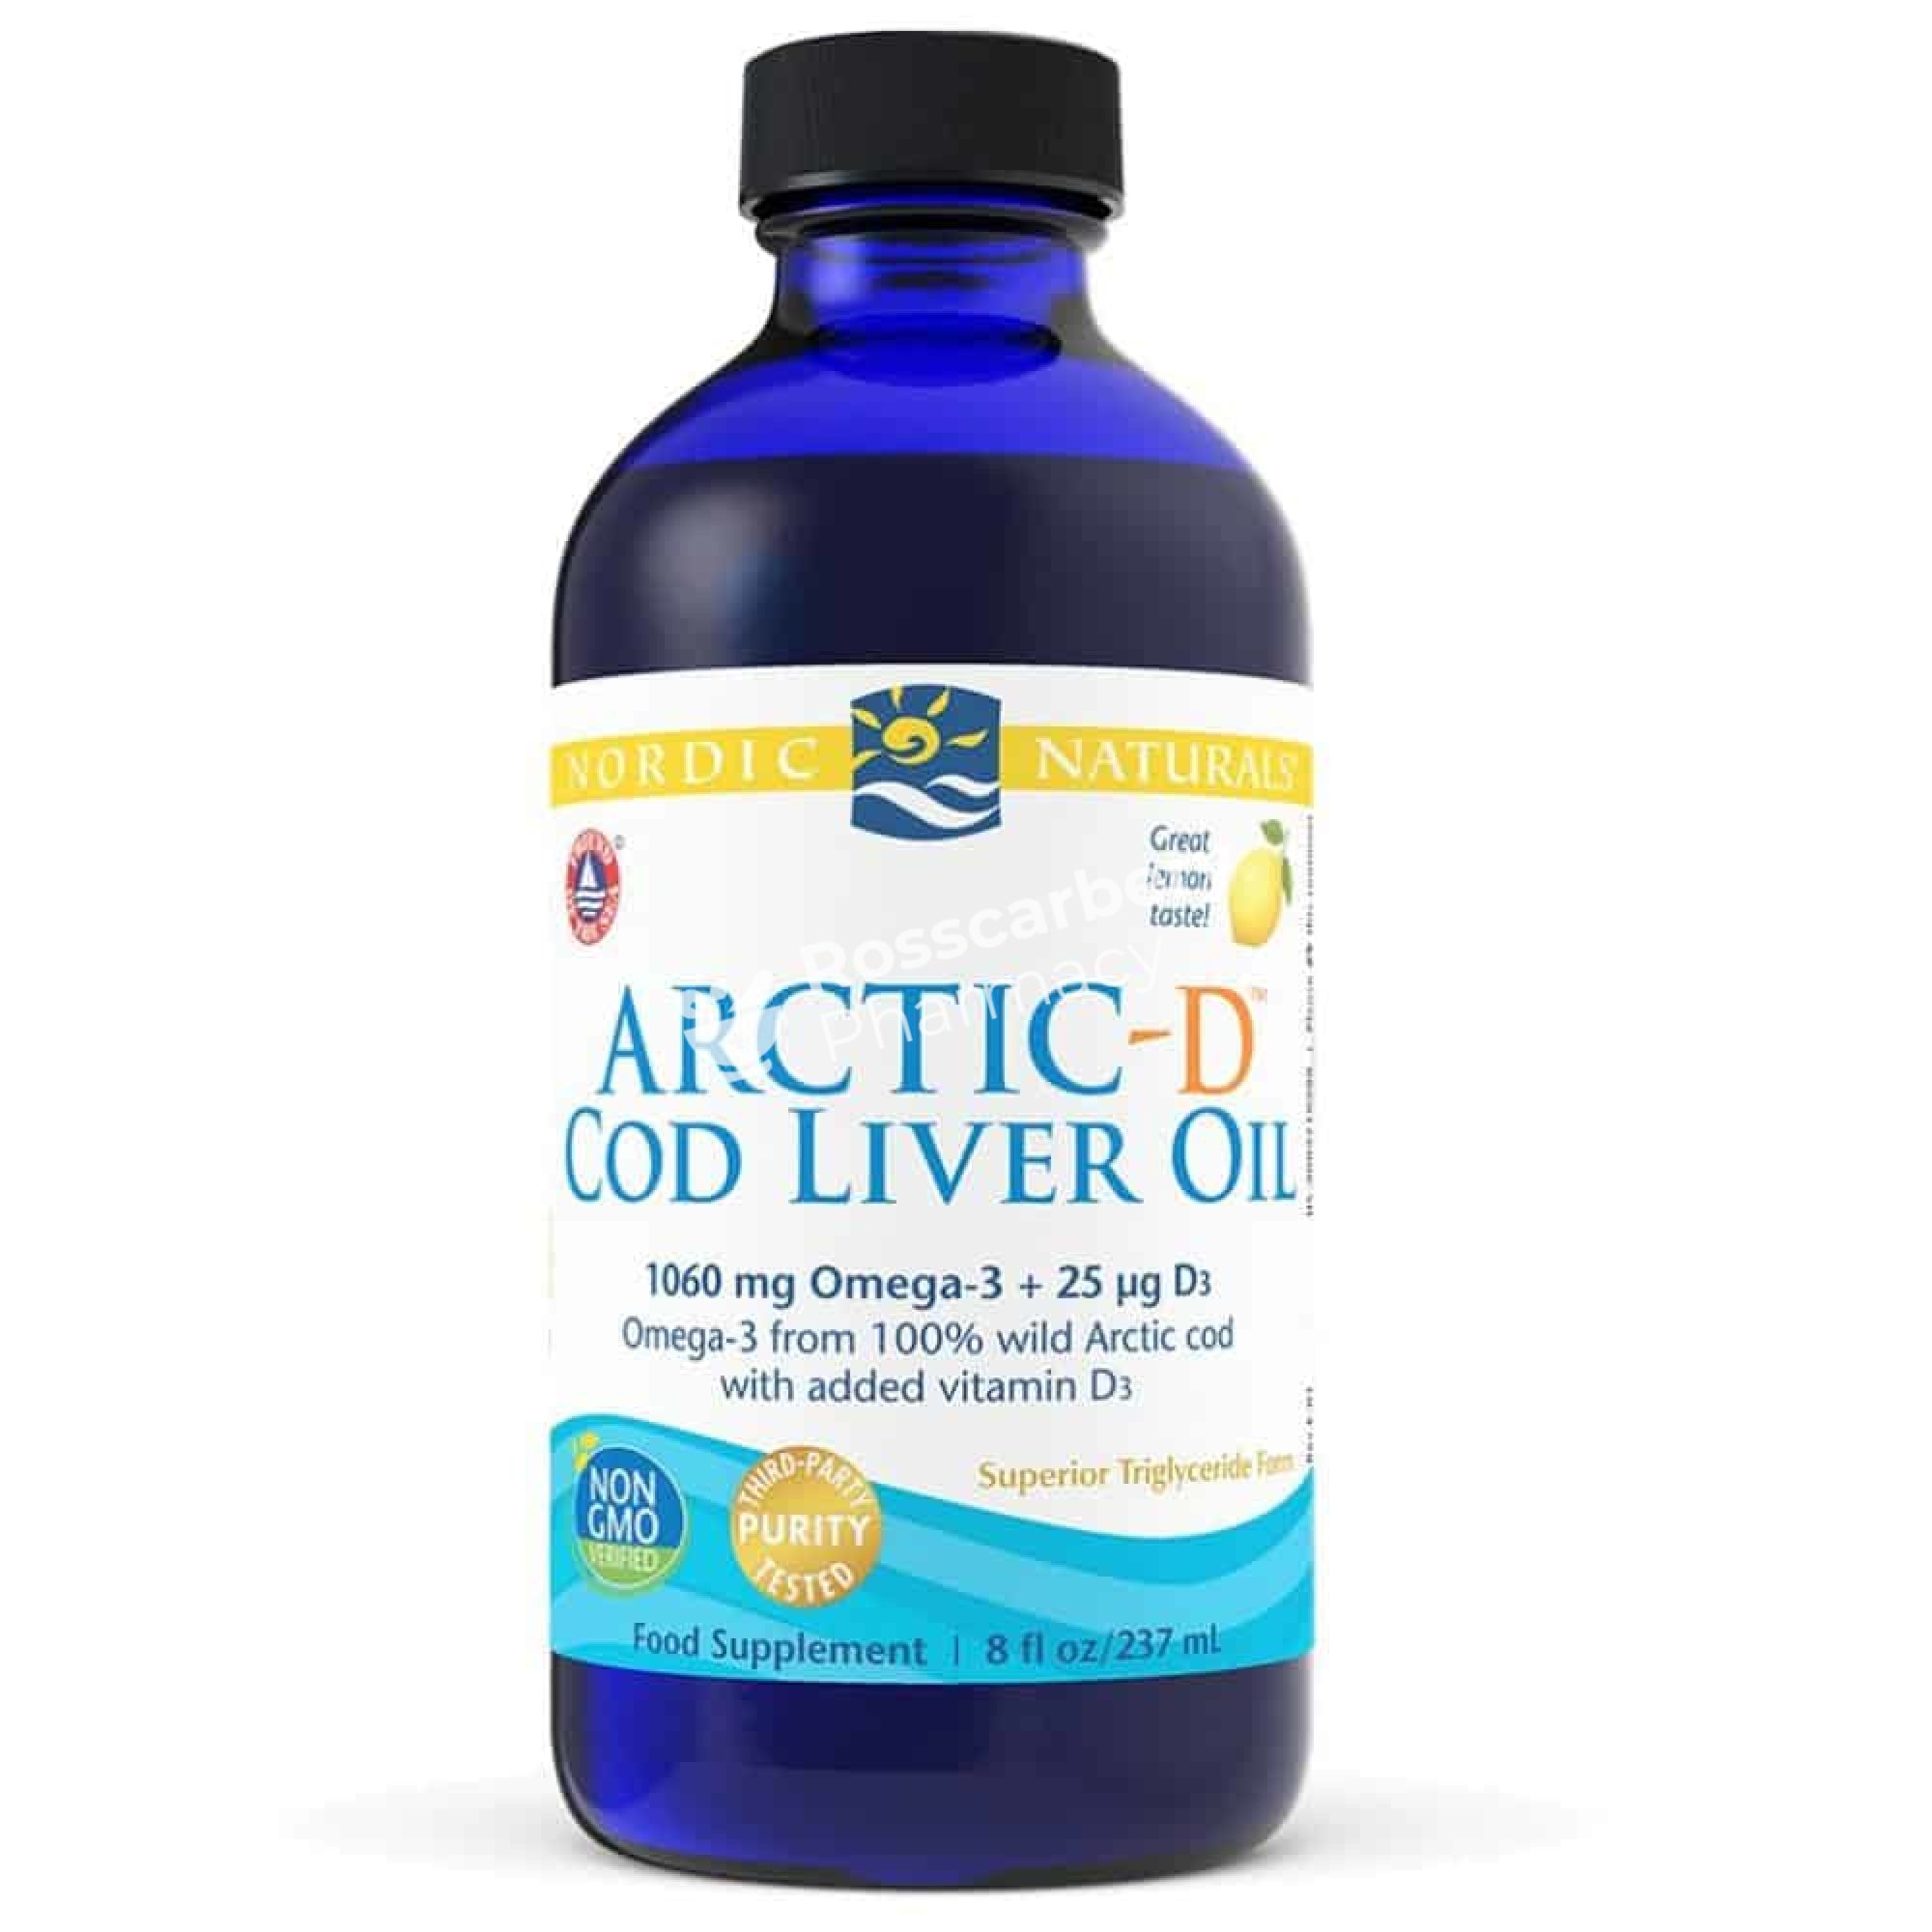 Nordic Naturals - Arctic-D Cod Liver Oil Brain Health